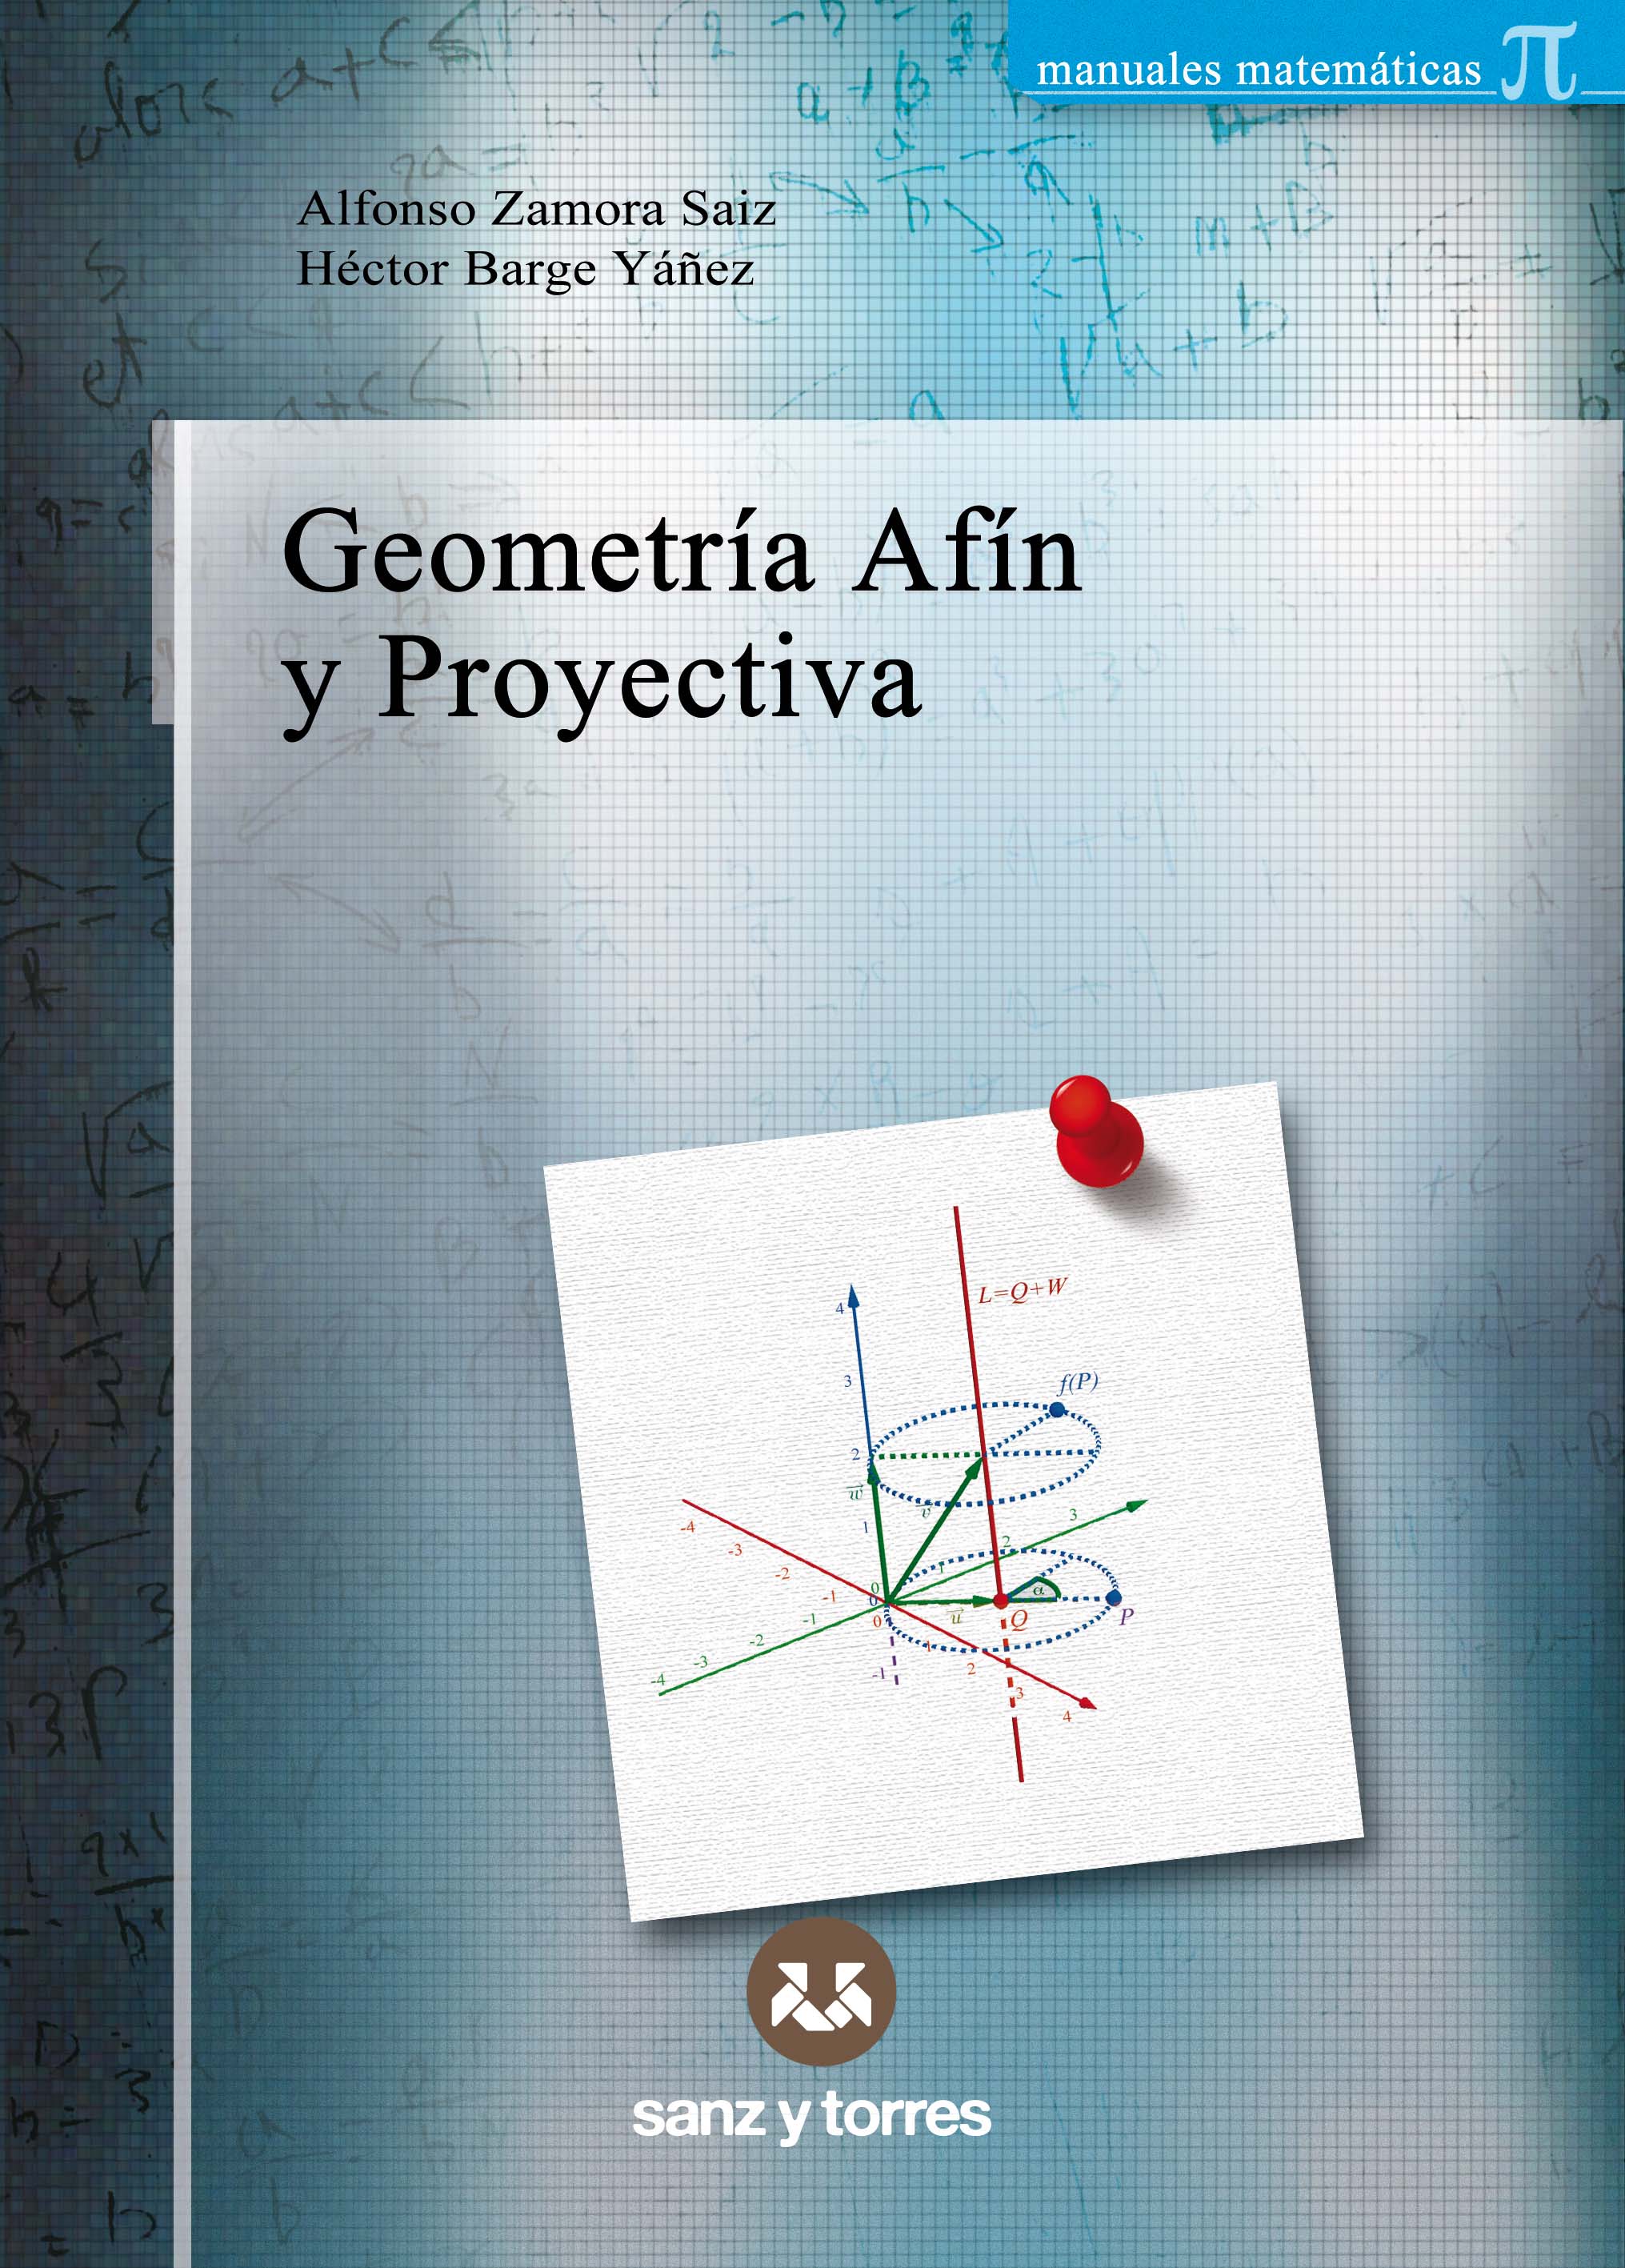 Editorial Sanz y Torres - Geometría afín y proyectiva | Alfonso Zamora Saiz  y Héctor Barge Yáñez | 978-84-18316-62-3